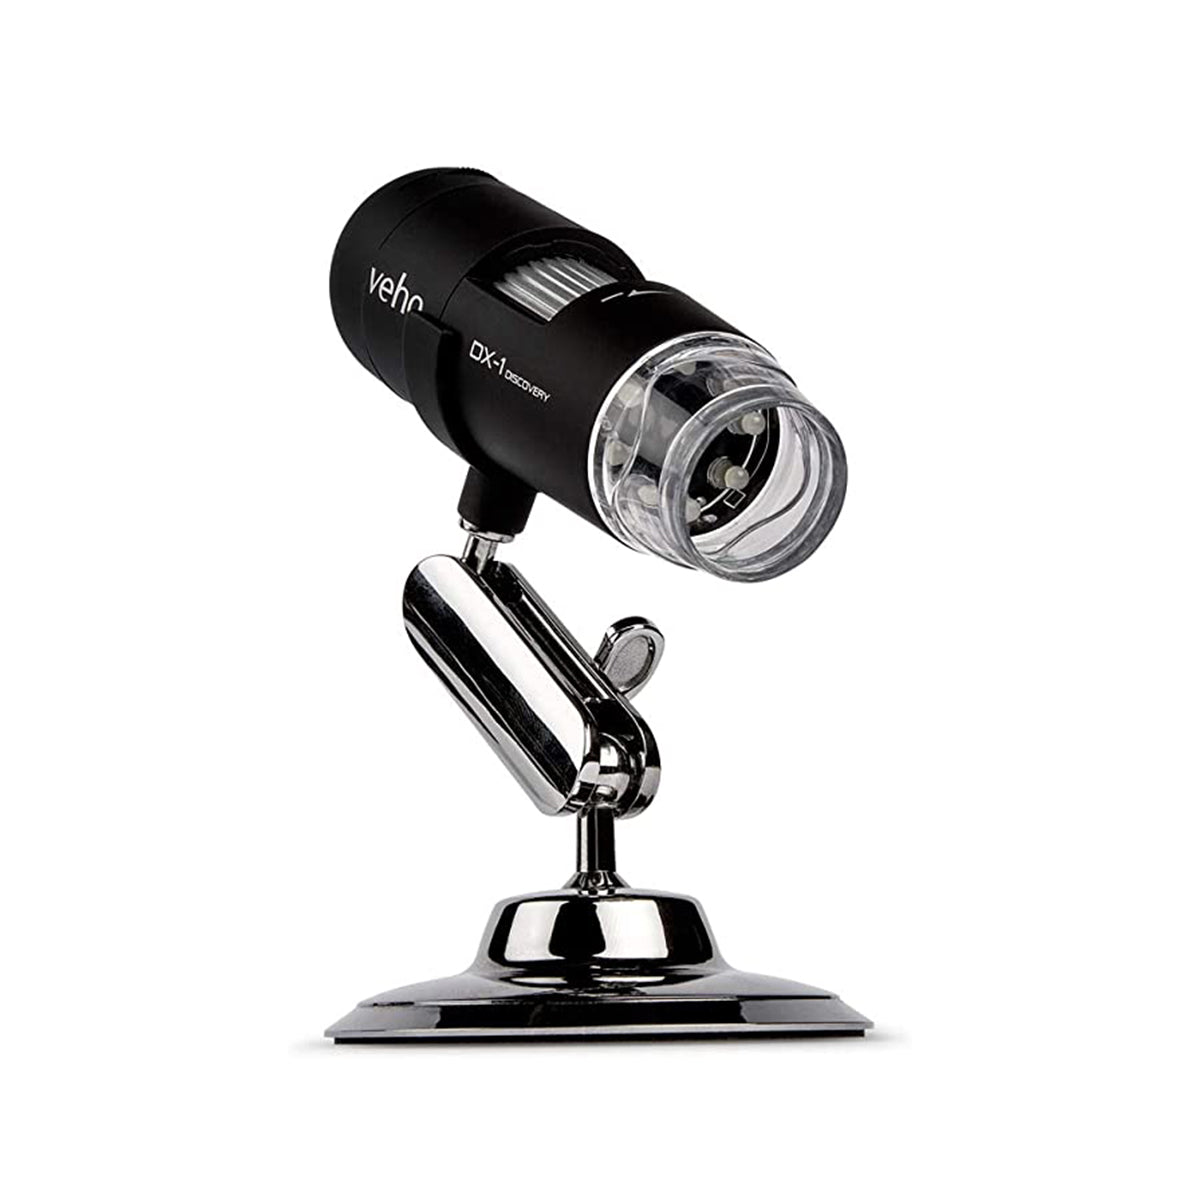 Veho DX-1 USB 2MP Microscope